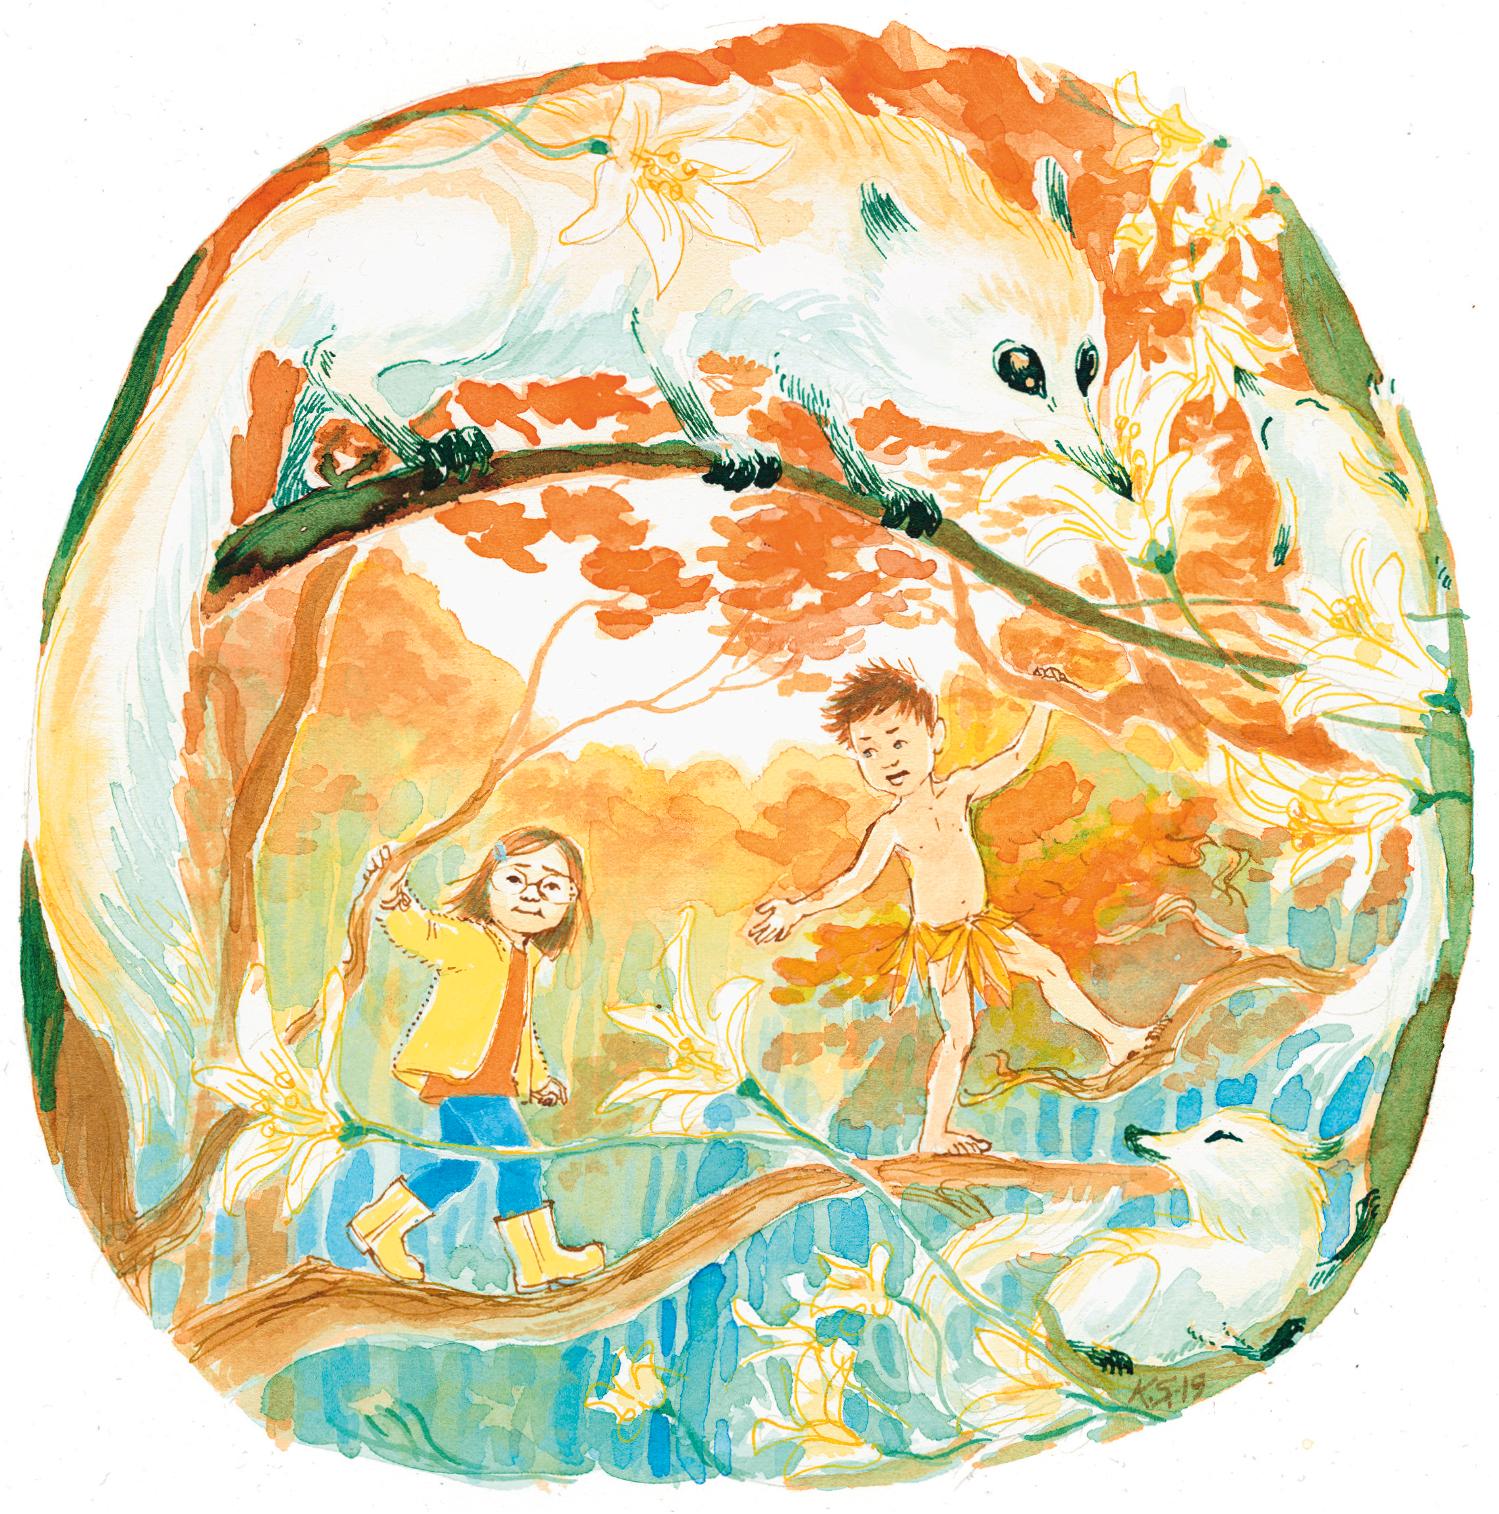 Illustration från sagan ”Barnen i trädet” av Ylva Karlsson.